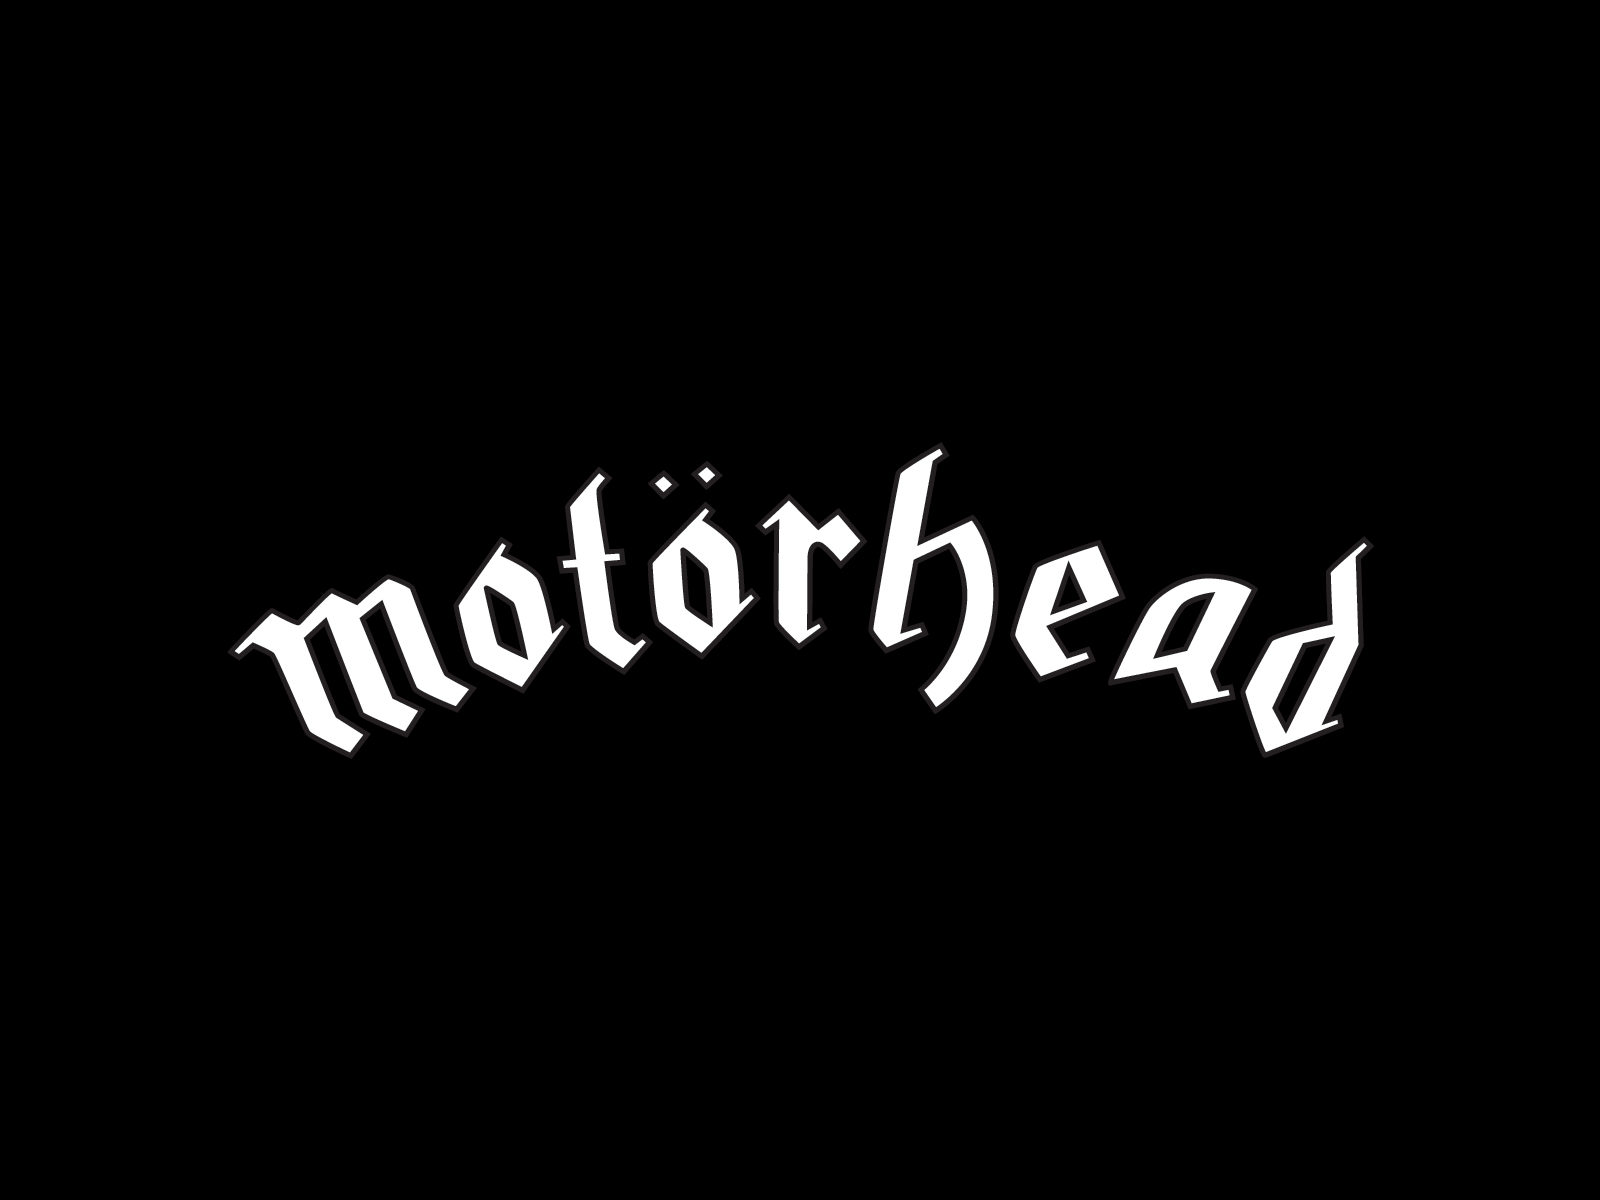 motorhead, Heavy, Metal, Hard, Rock Wallpaper